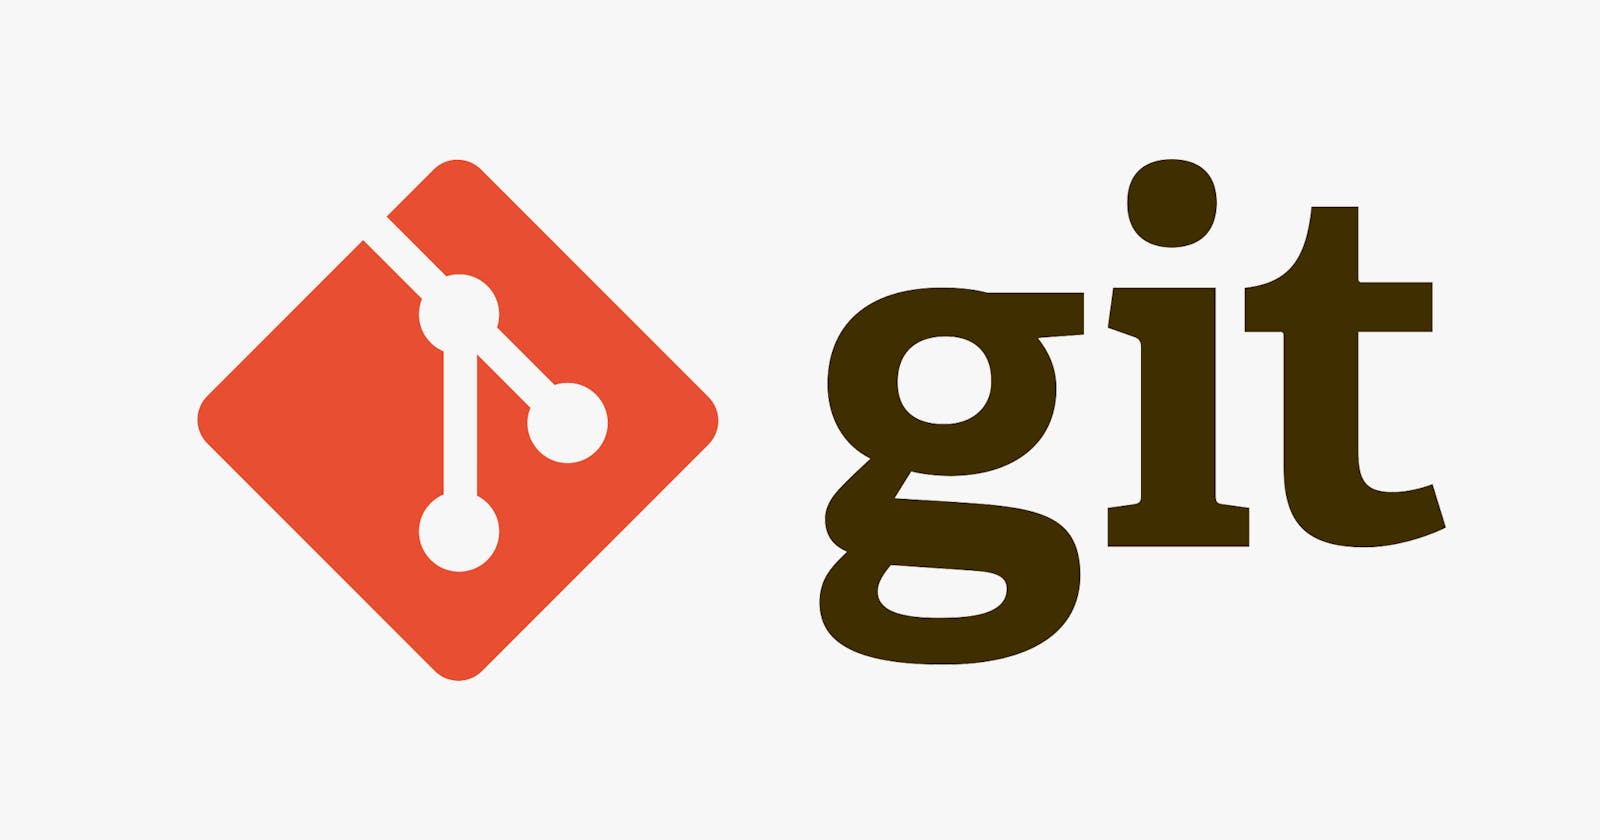 A Beginner's Guide To Git & Github